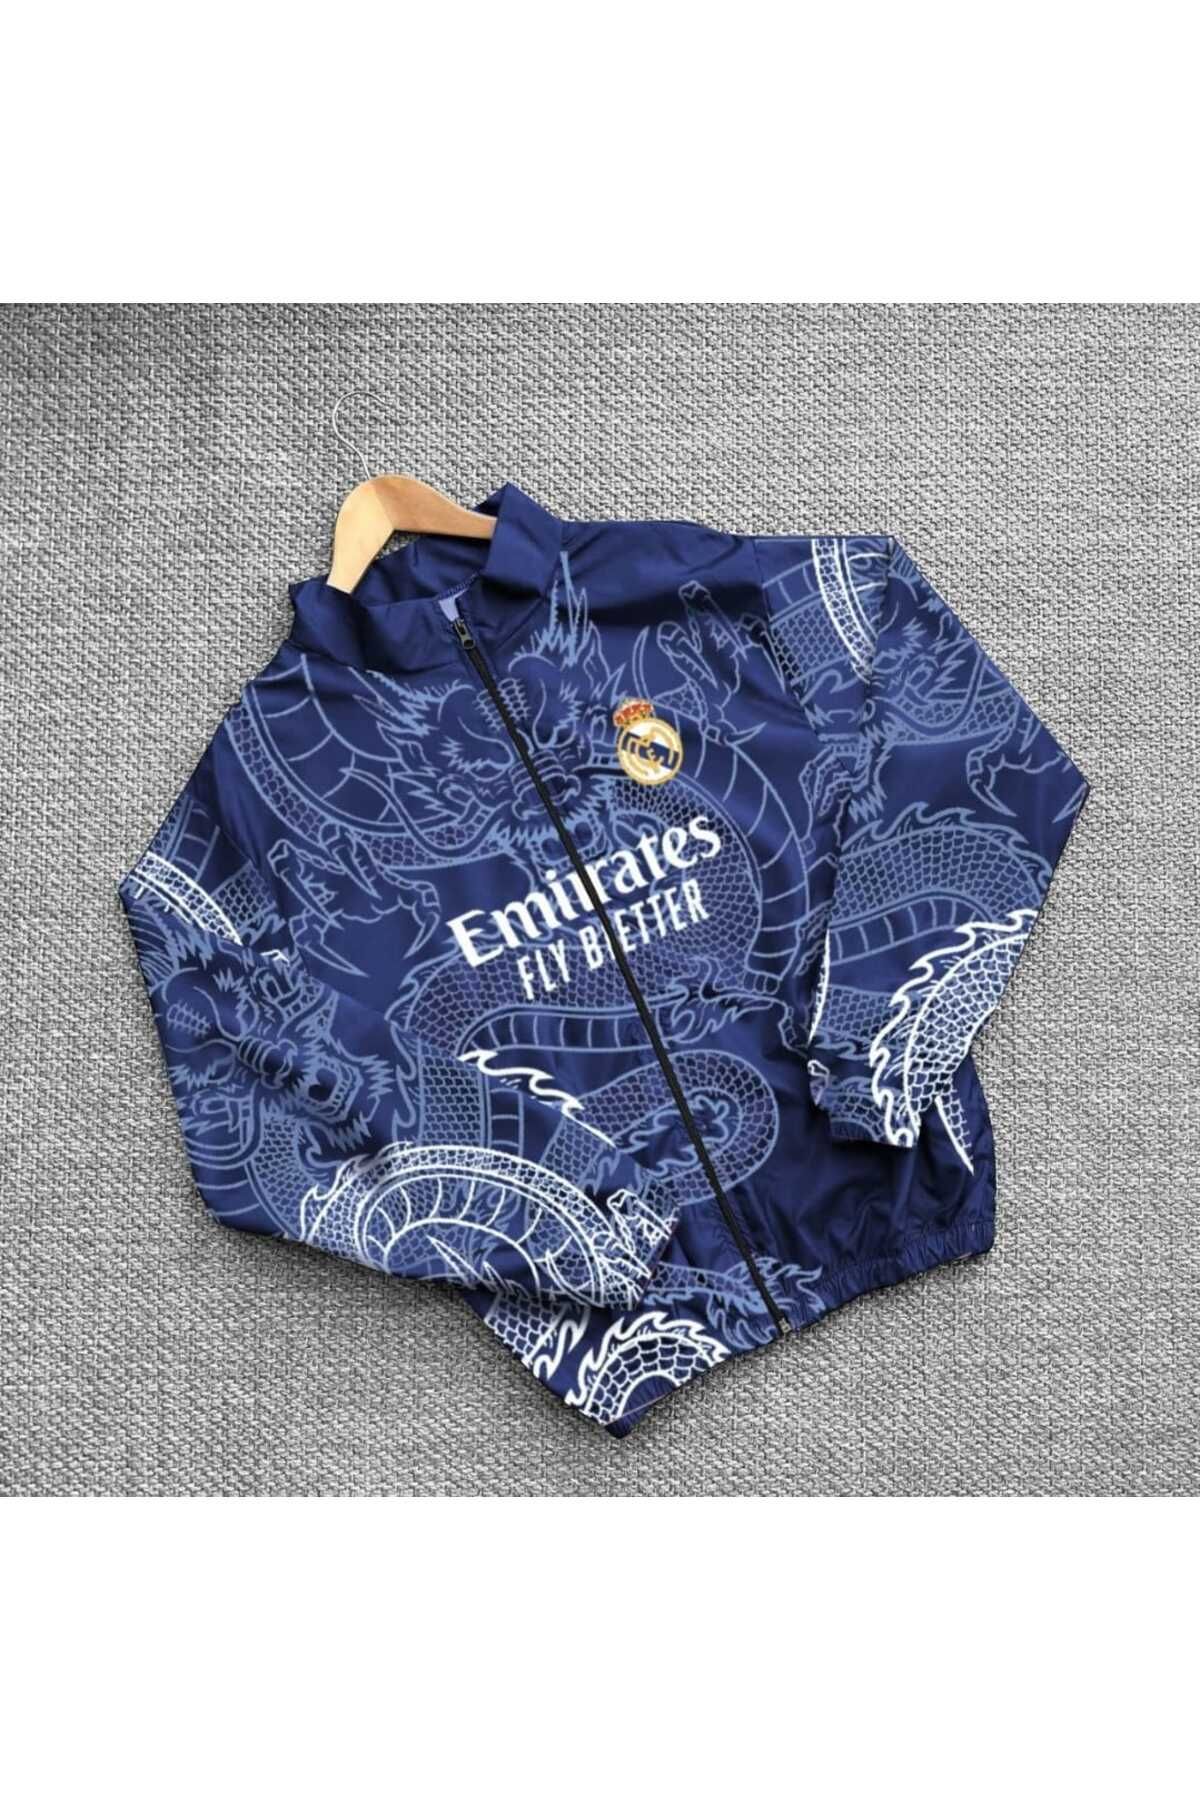 Real Madrid Baskılı Paraşüt Kumaş Ceket Unisex